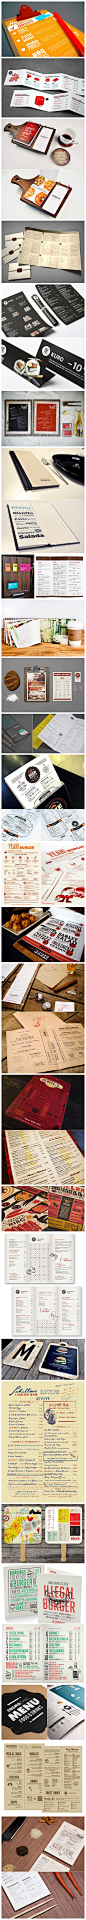 25款创意餐厅菜单设计.jpg